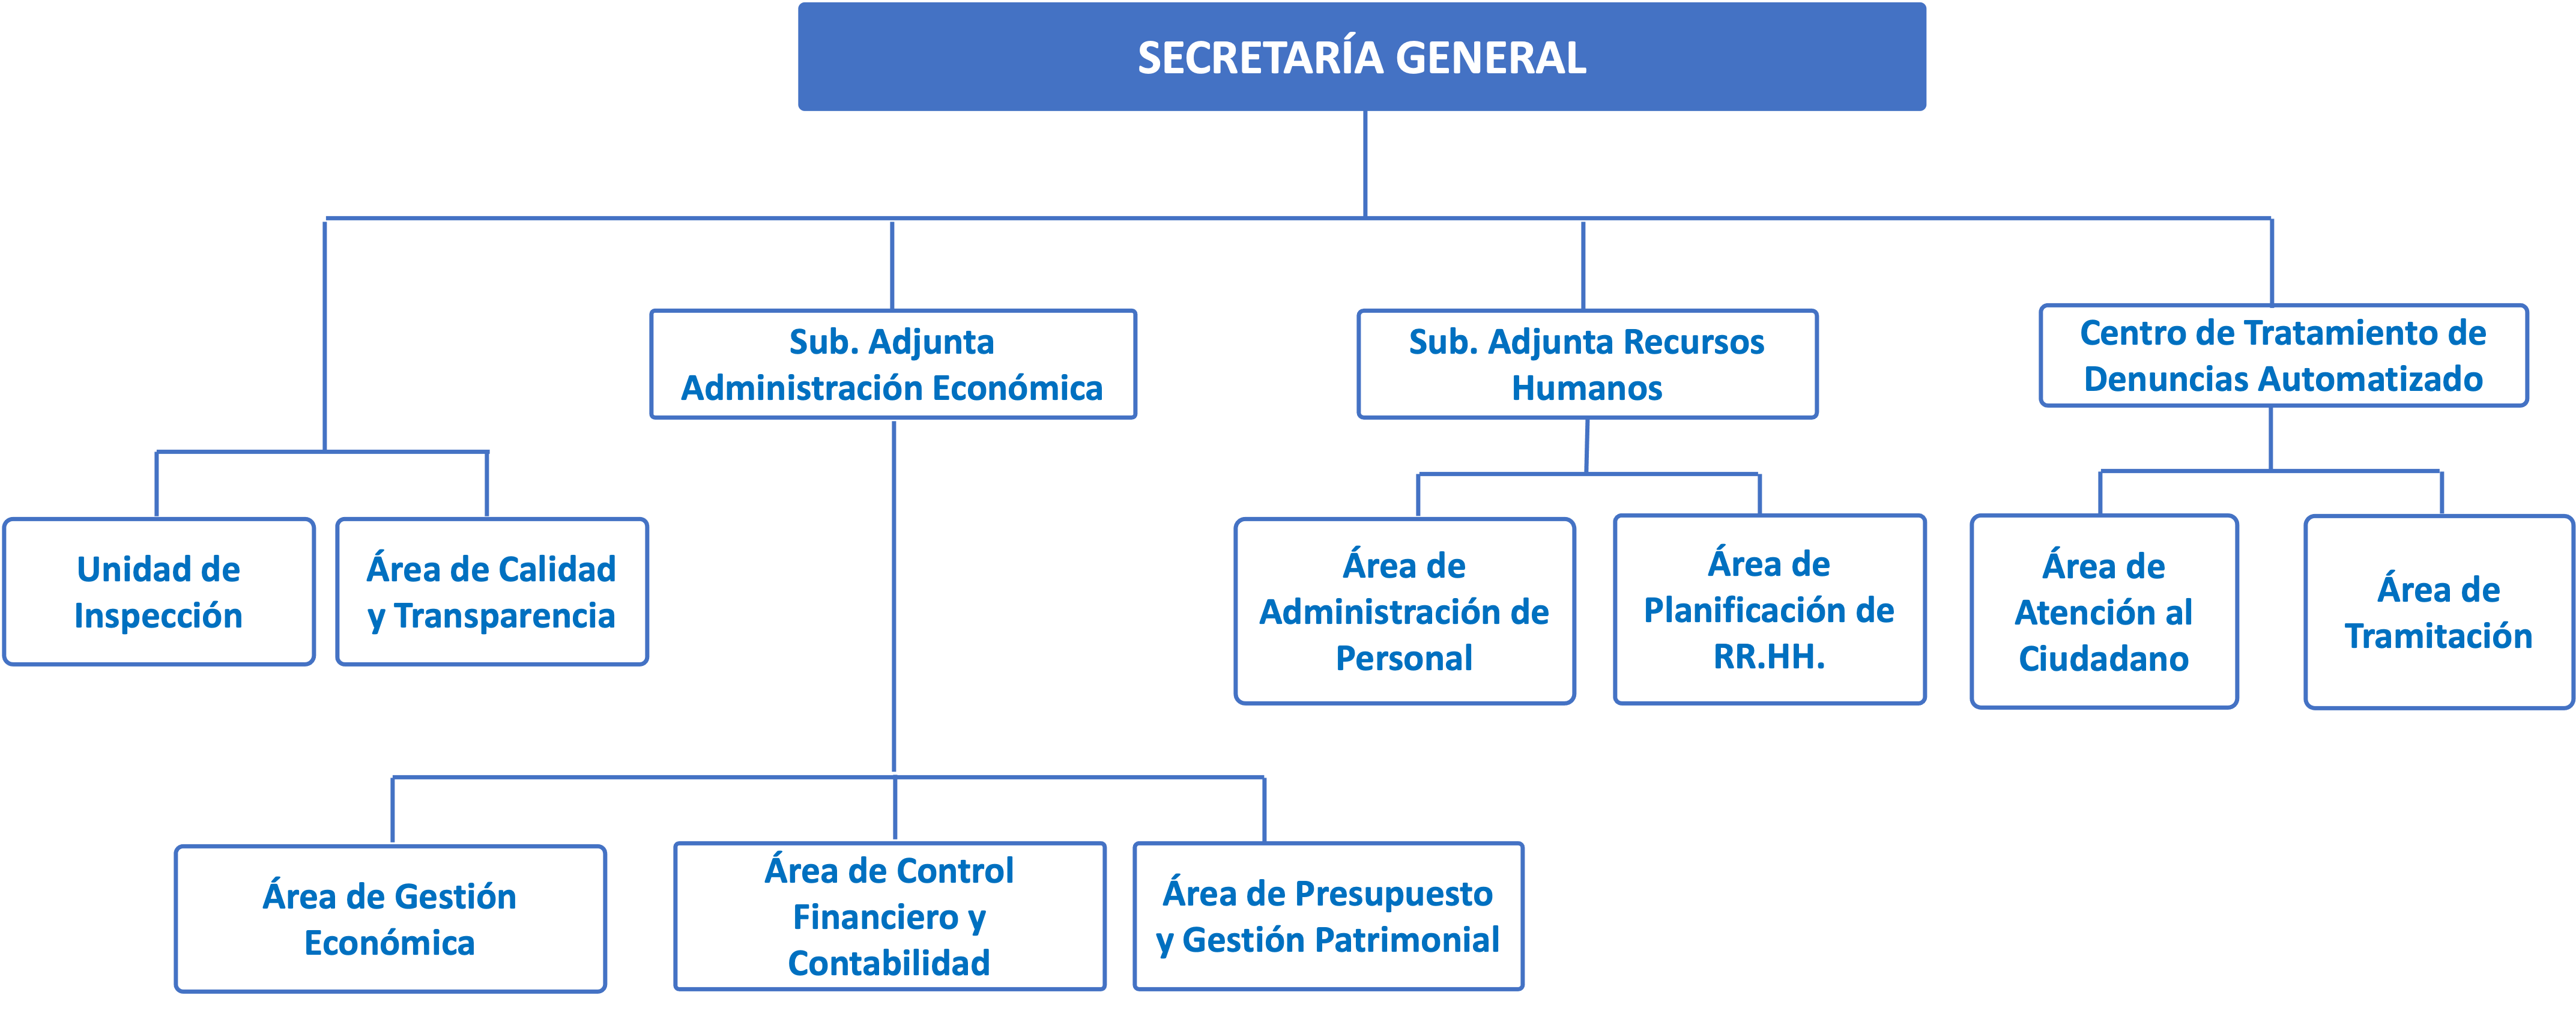 Organigrama Secretaría General